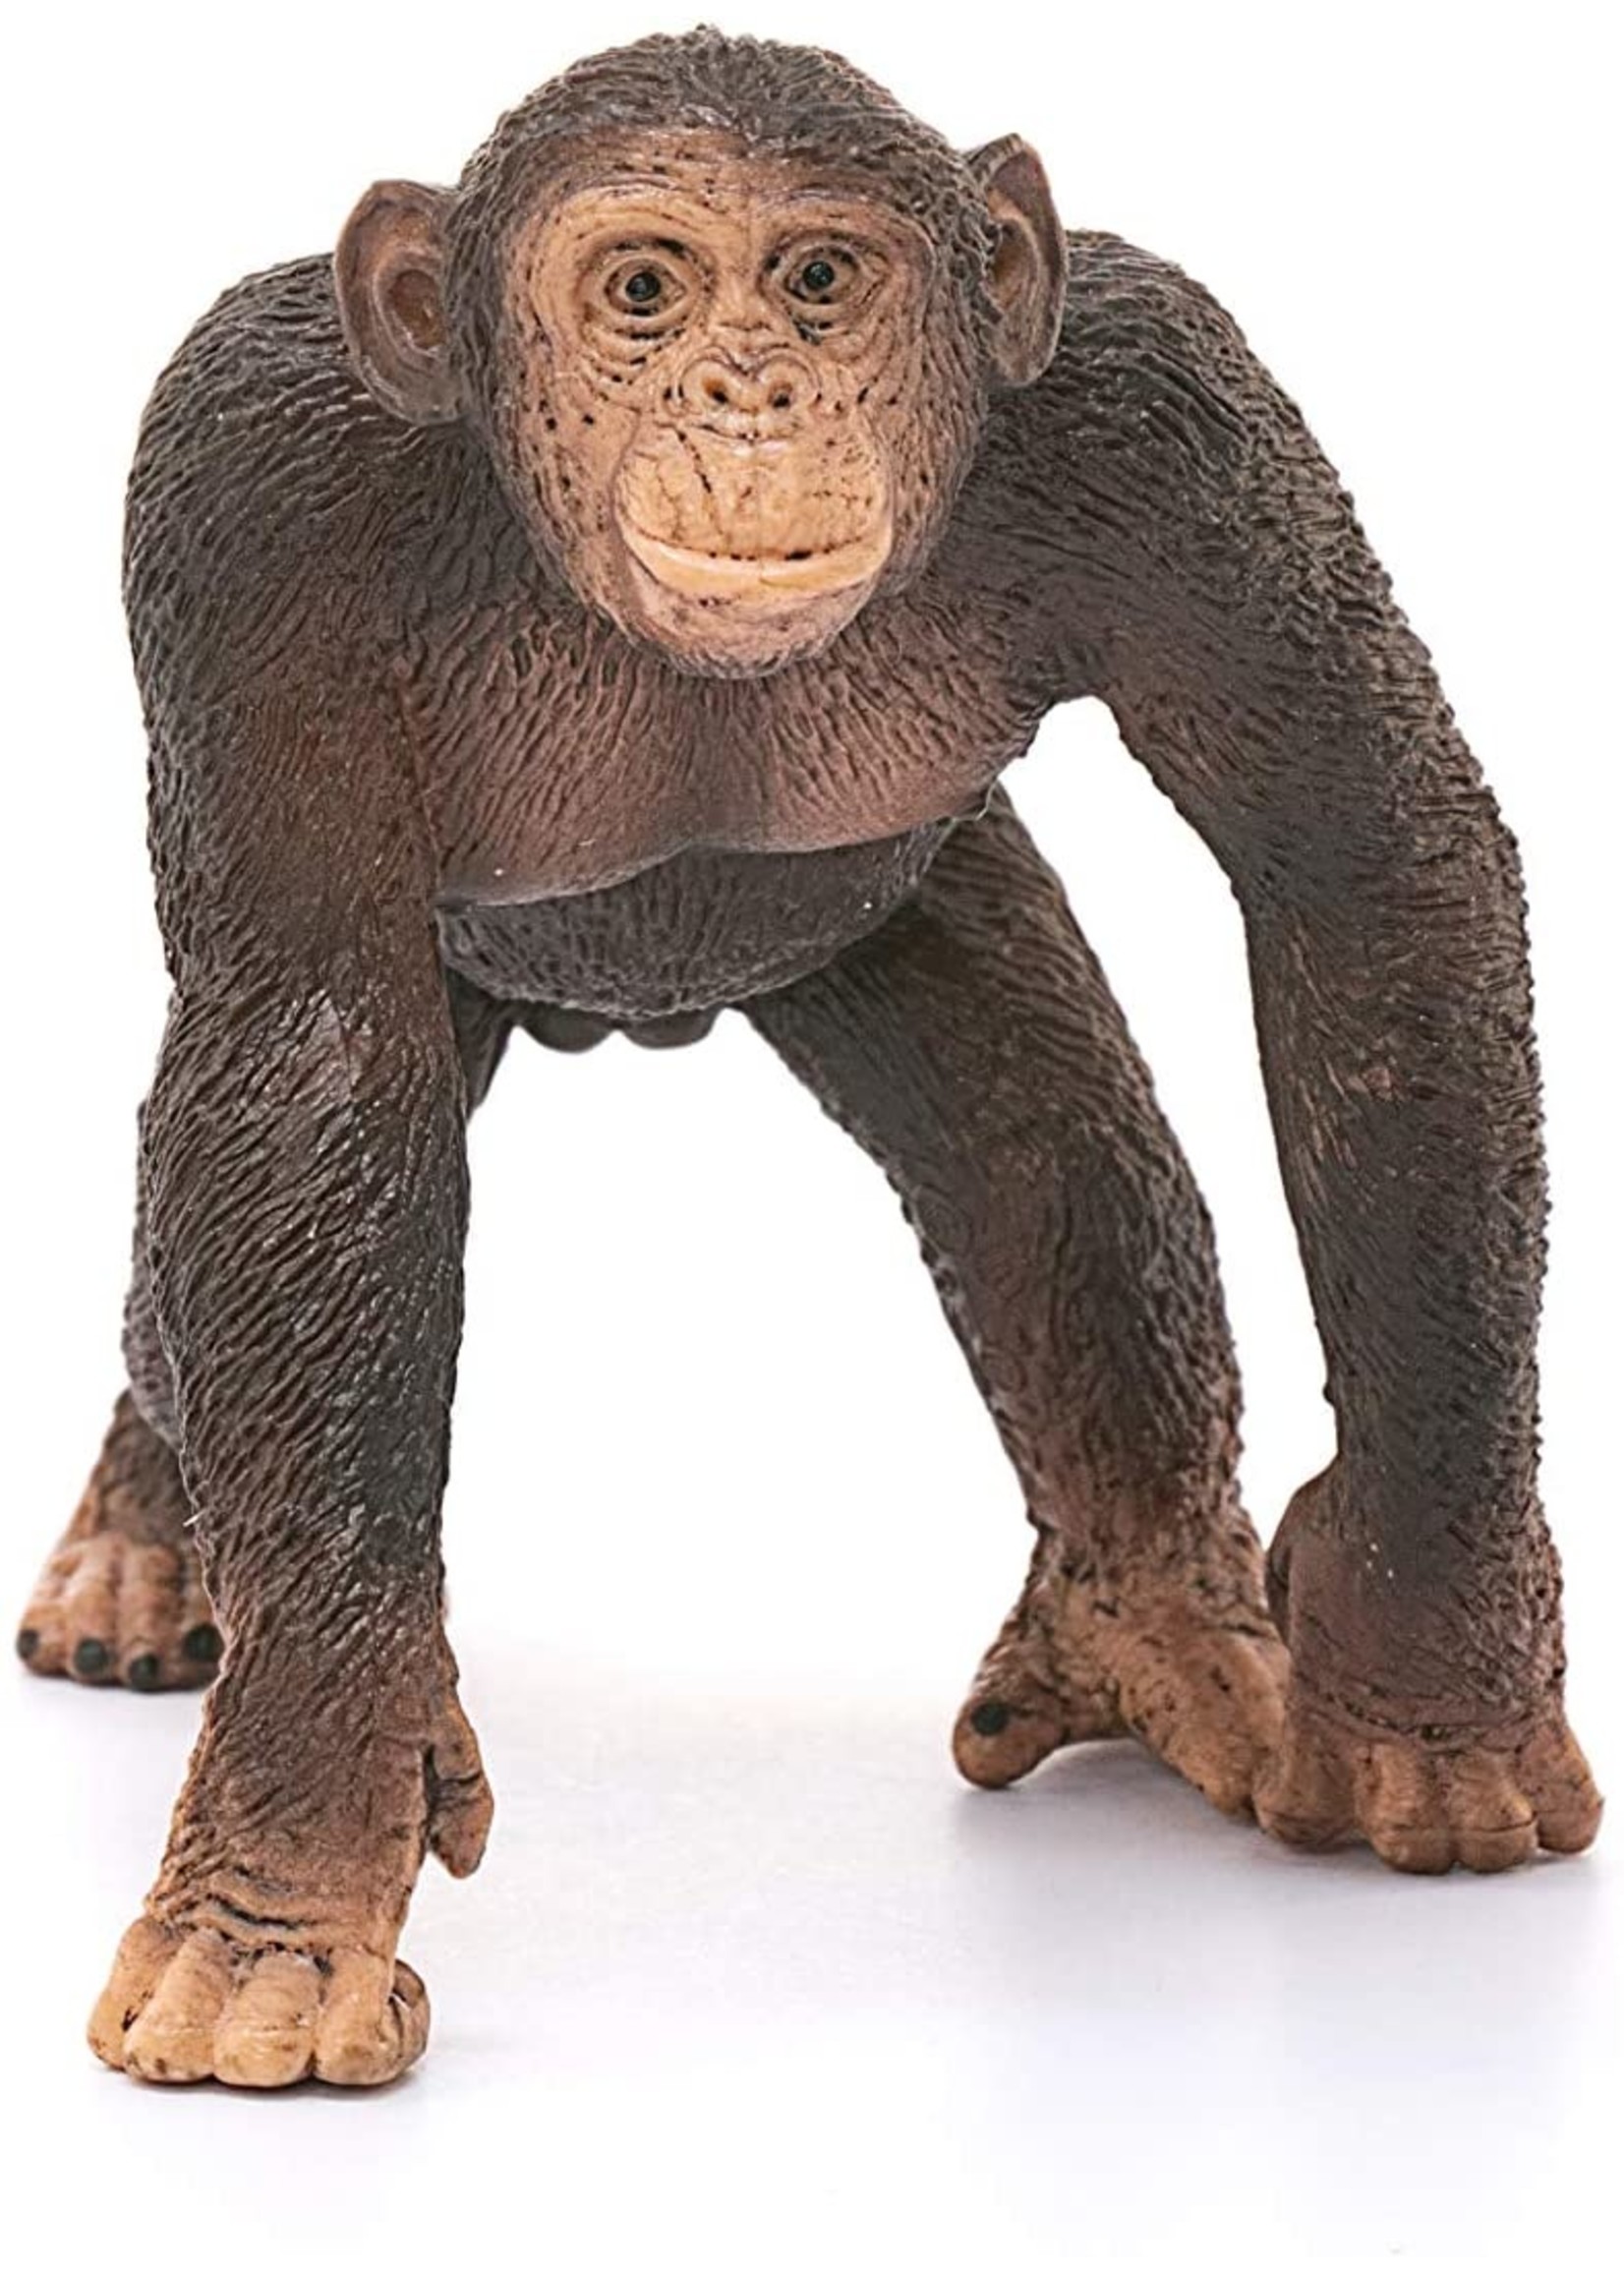 Schleich 14817 - Chimpanzee, Male